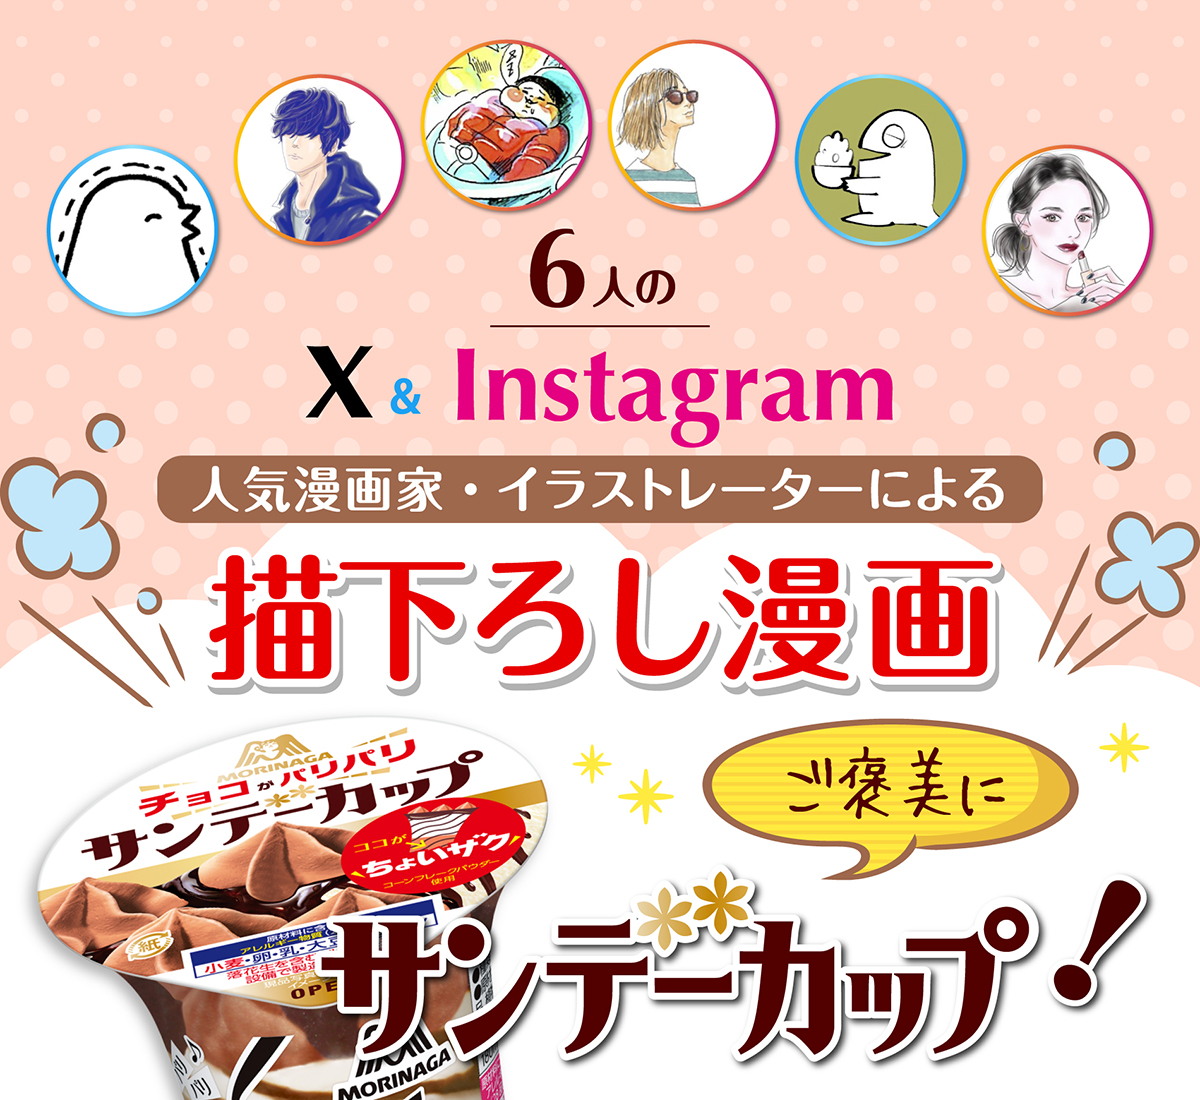 6人のtwitter Instagram人気漫画家 イラストレーターによるサンデーカップ描下ろし漫画 サンデーカップ 森永製菓